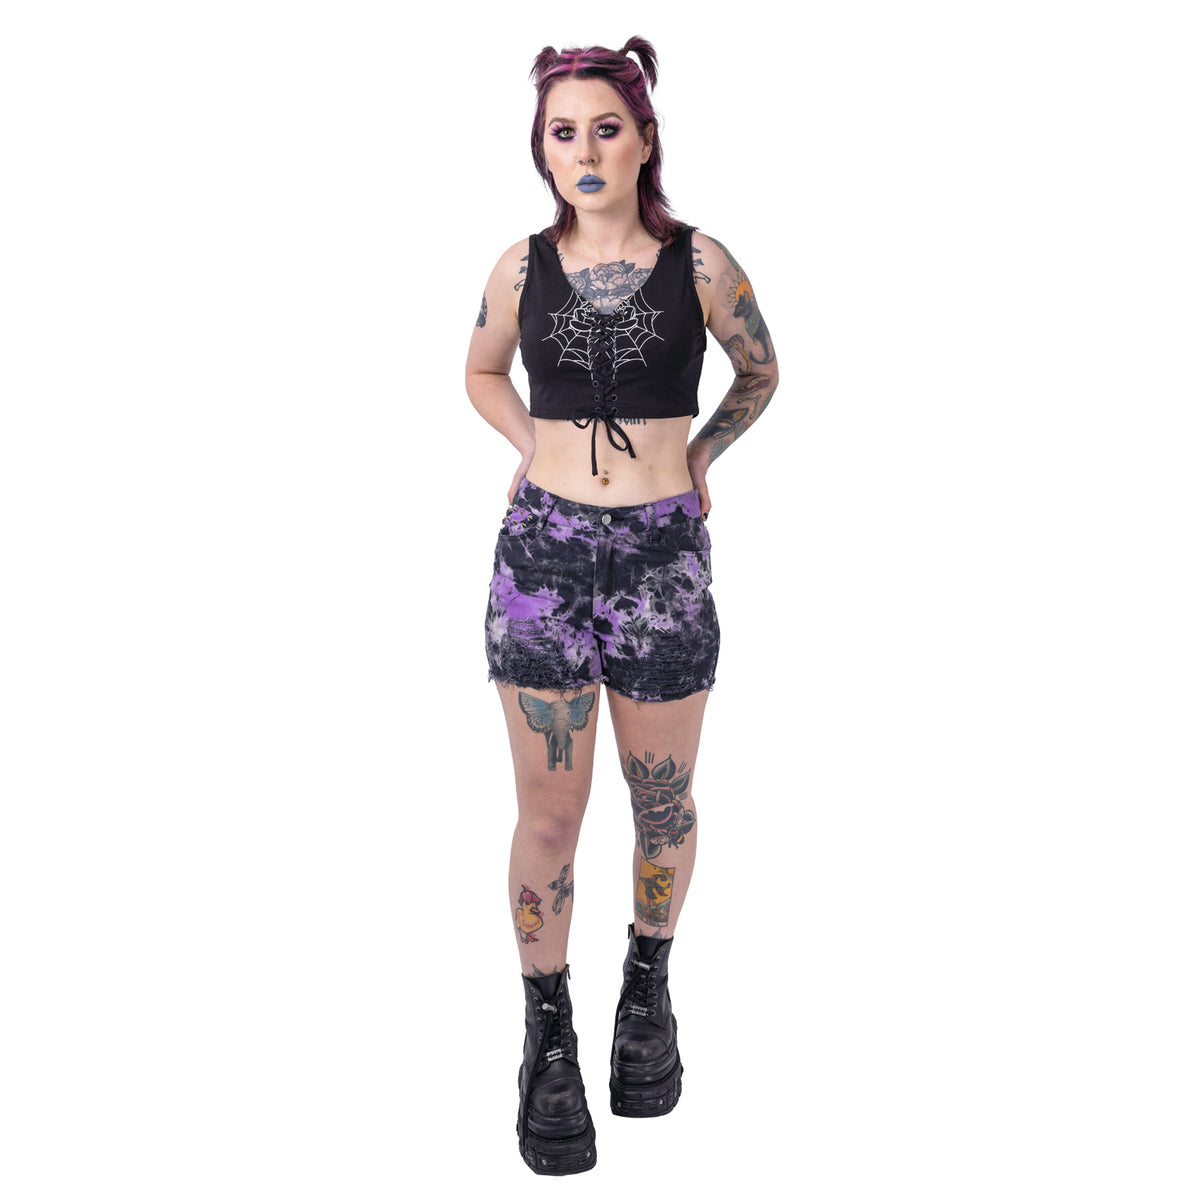 Vixxsin Gaia Shorts | Black/Purple Tie Dye